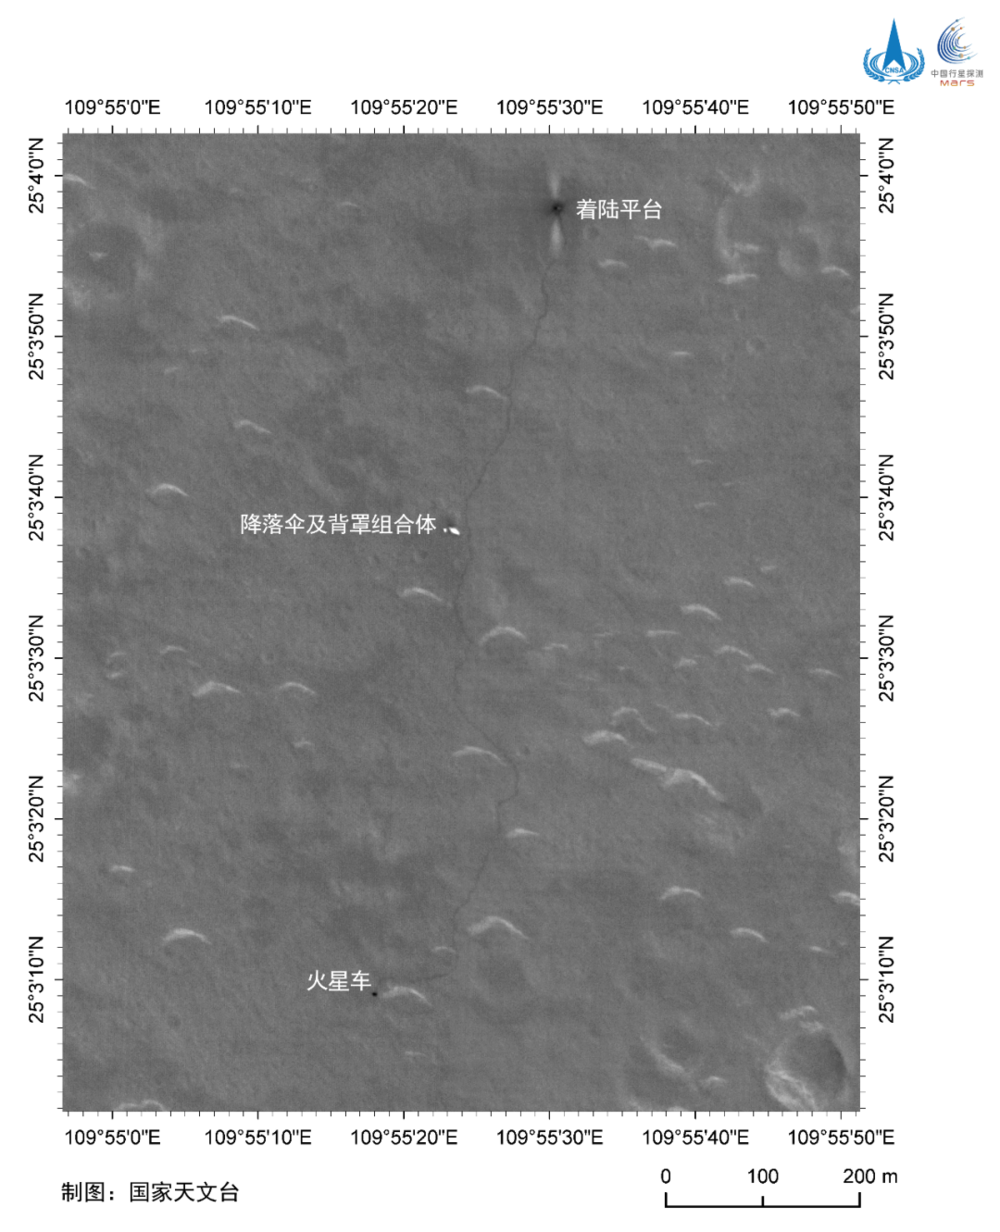 天问一号环绕器拍摄的祝融号移动轨迹 | 图源：国家航天局<br>